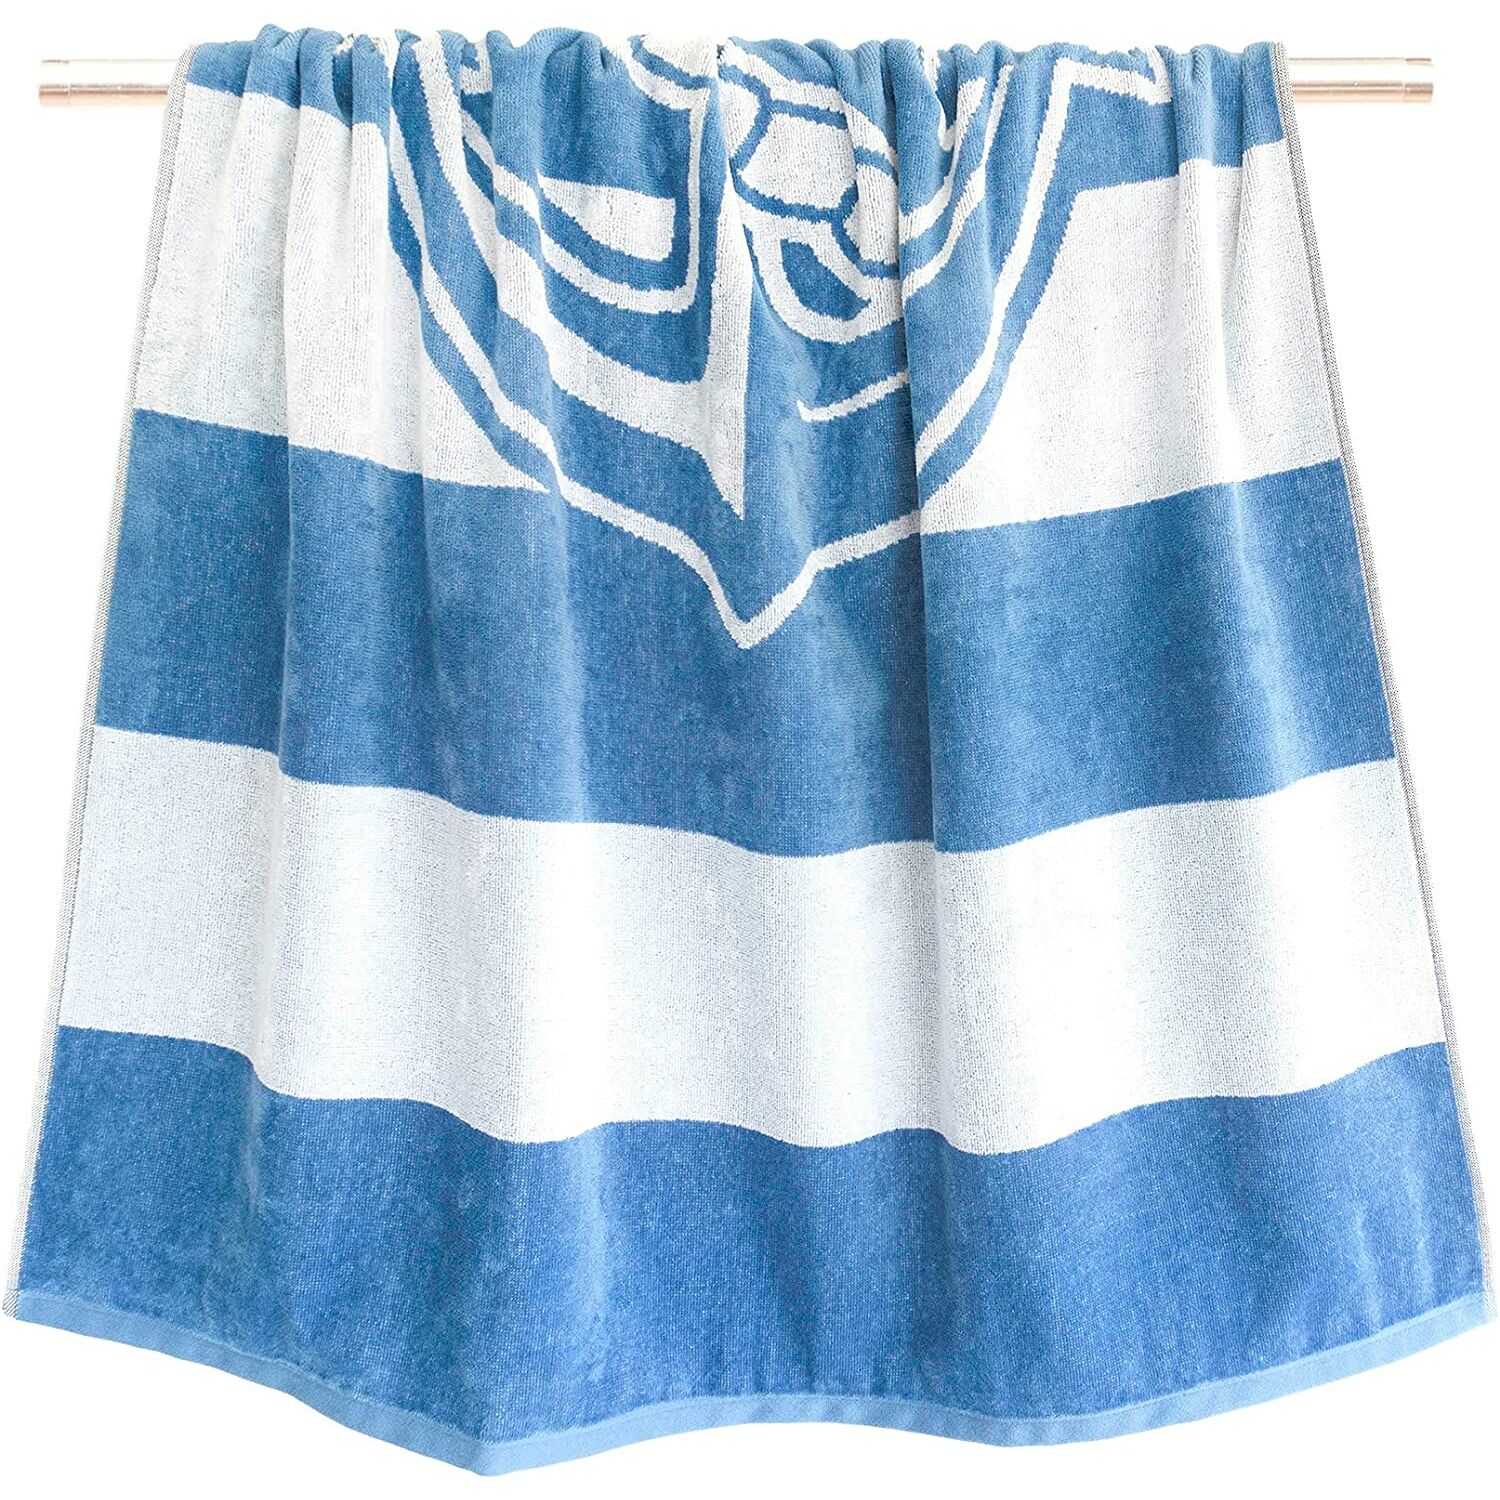 Handtücher :: Velours Strandtuch Athen, Badehandtuch Blau Weiß gestreift  mit Anker, Liegetuch 90x180 cm